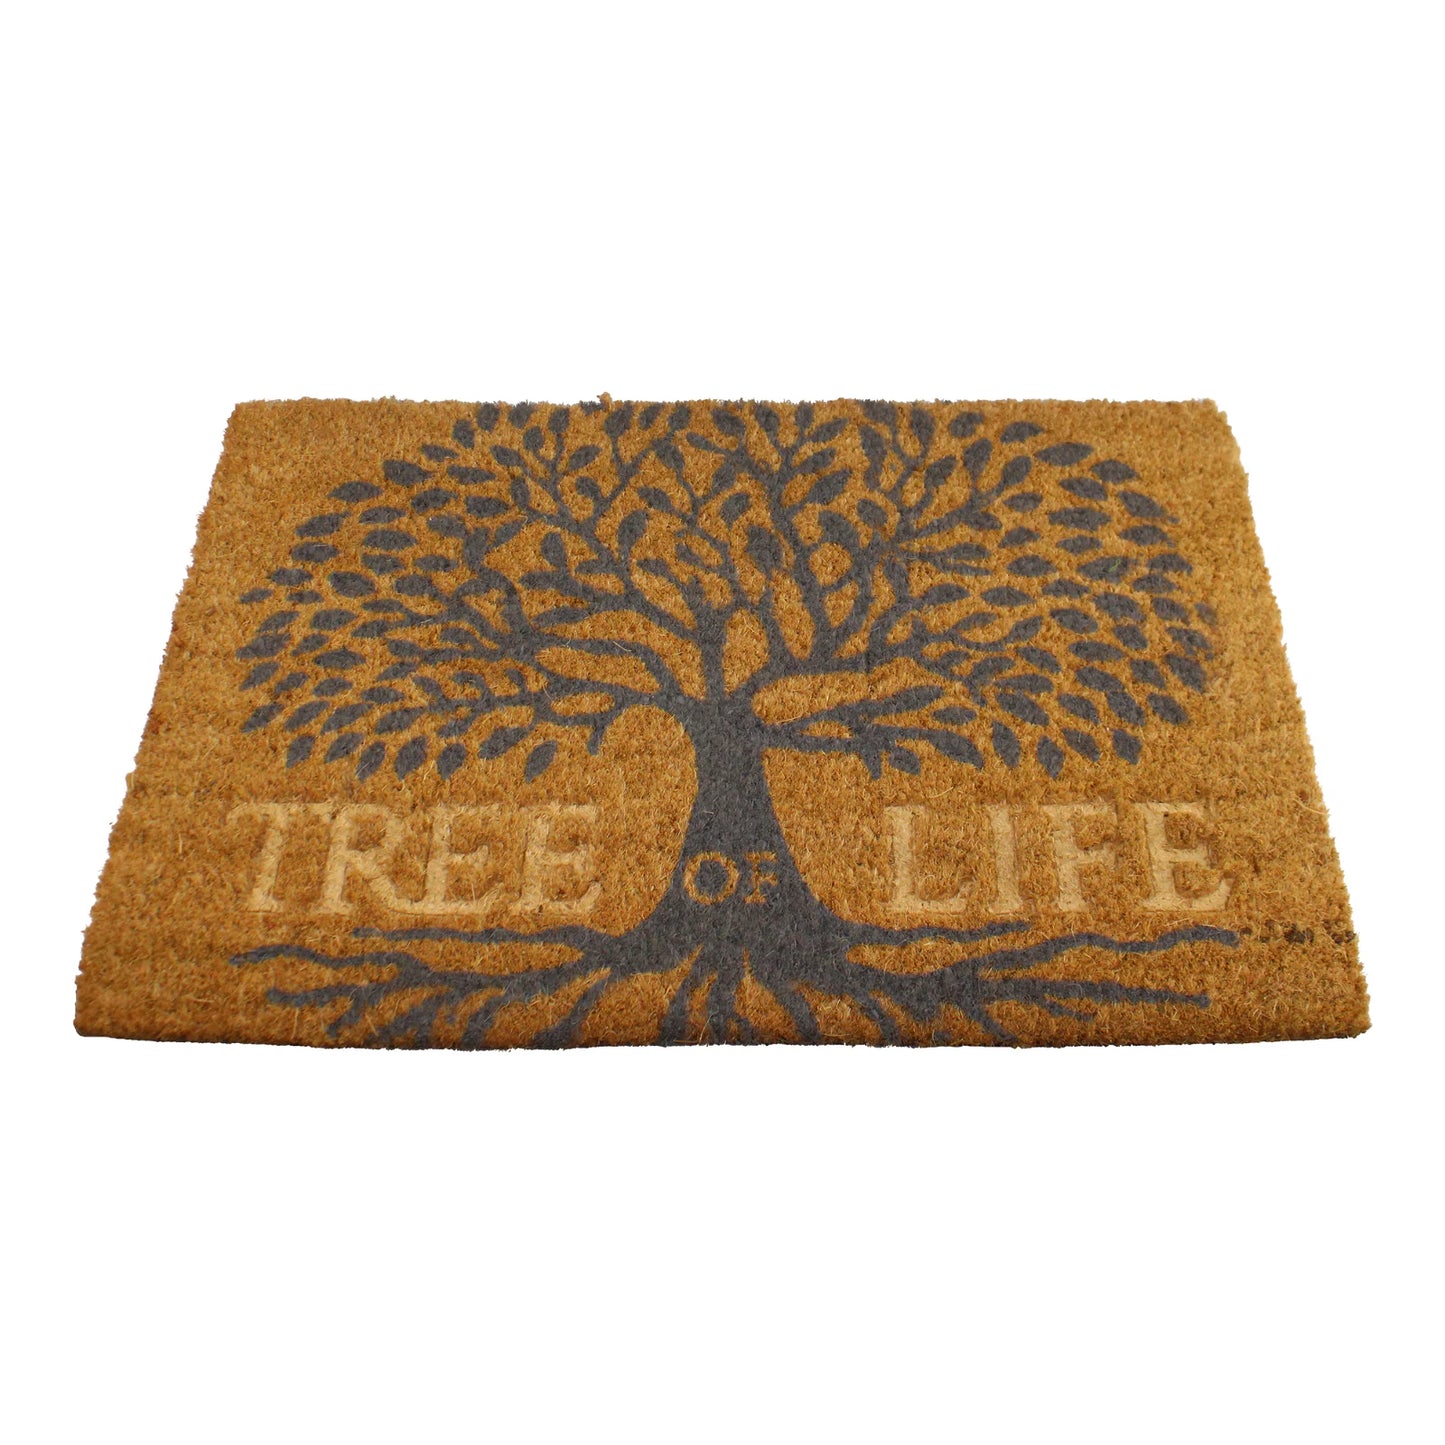 Luxury Tree Of Life Design Coir Doormat, 60x40cm